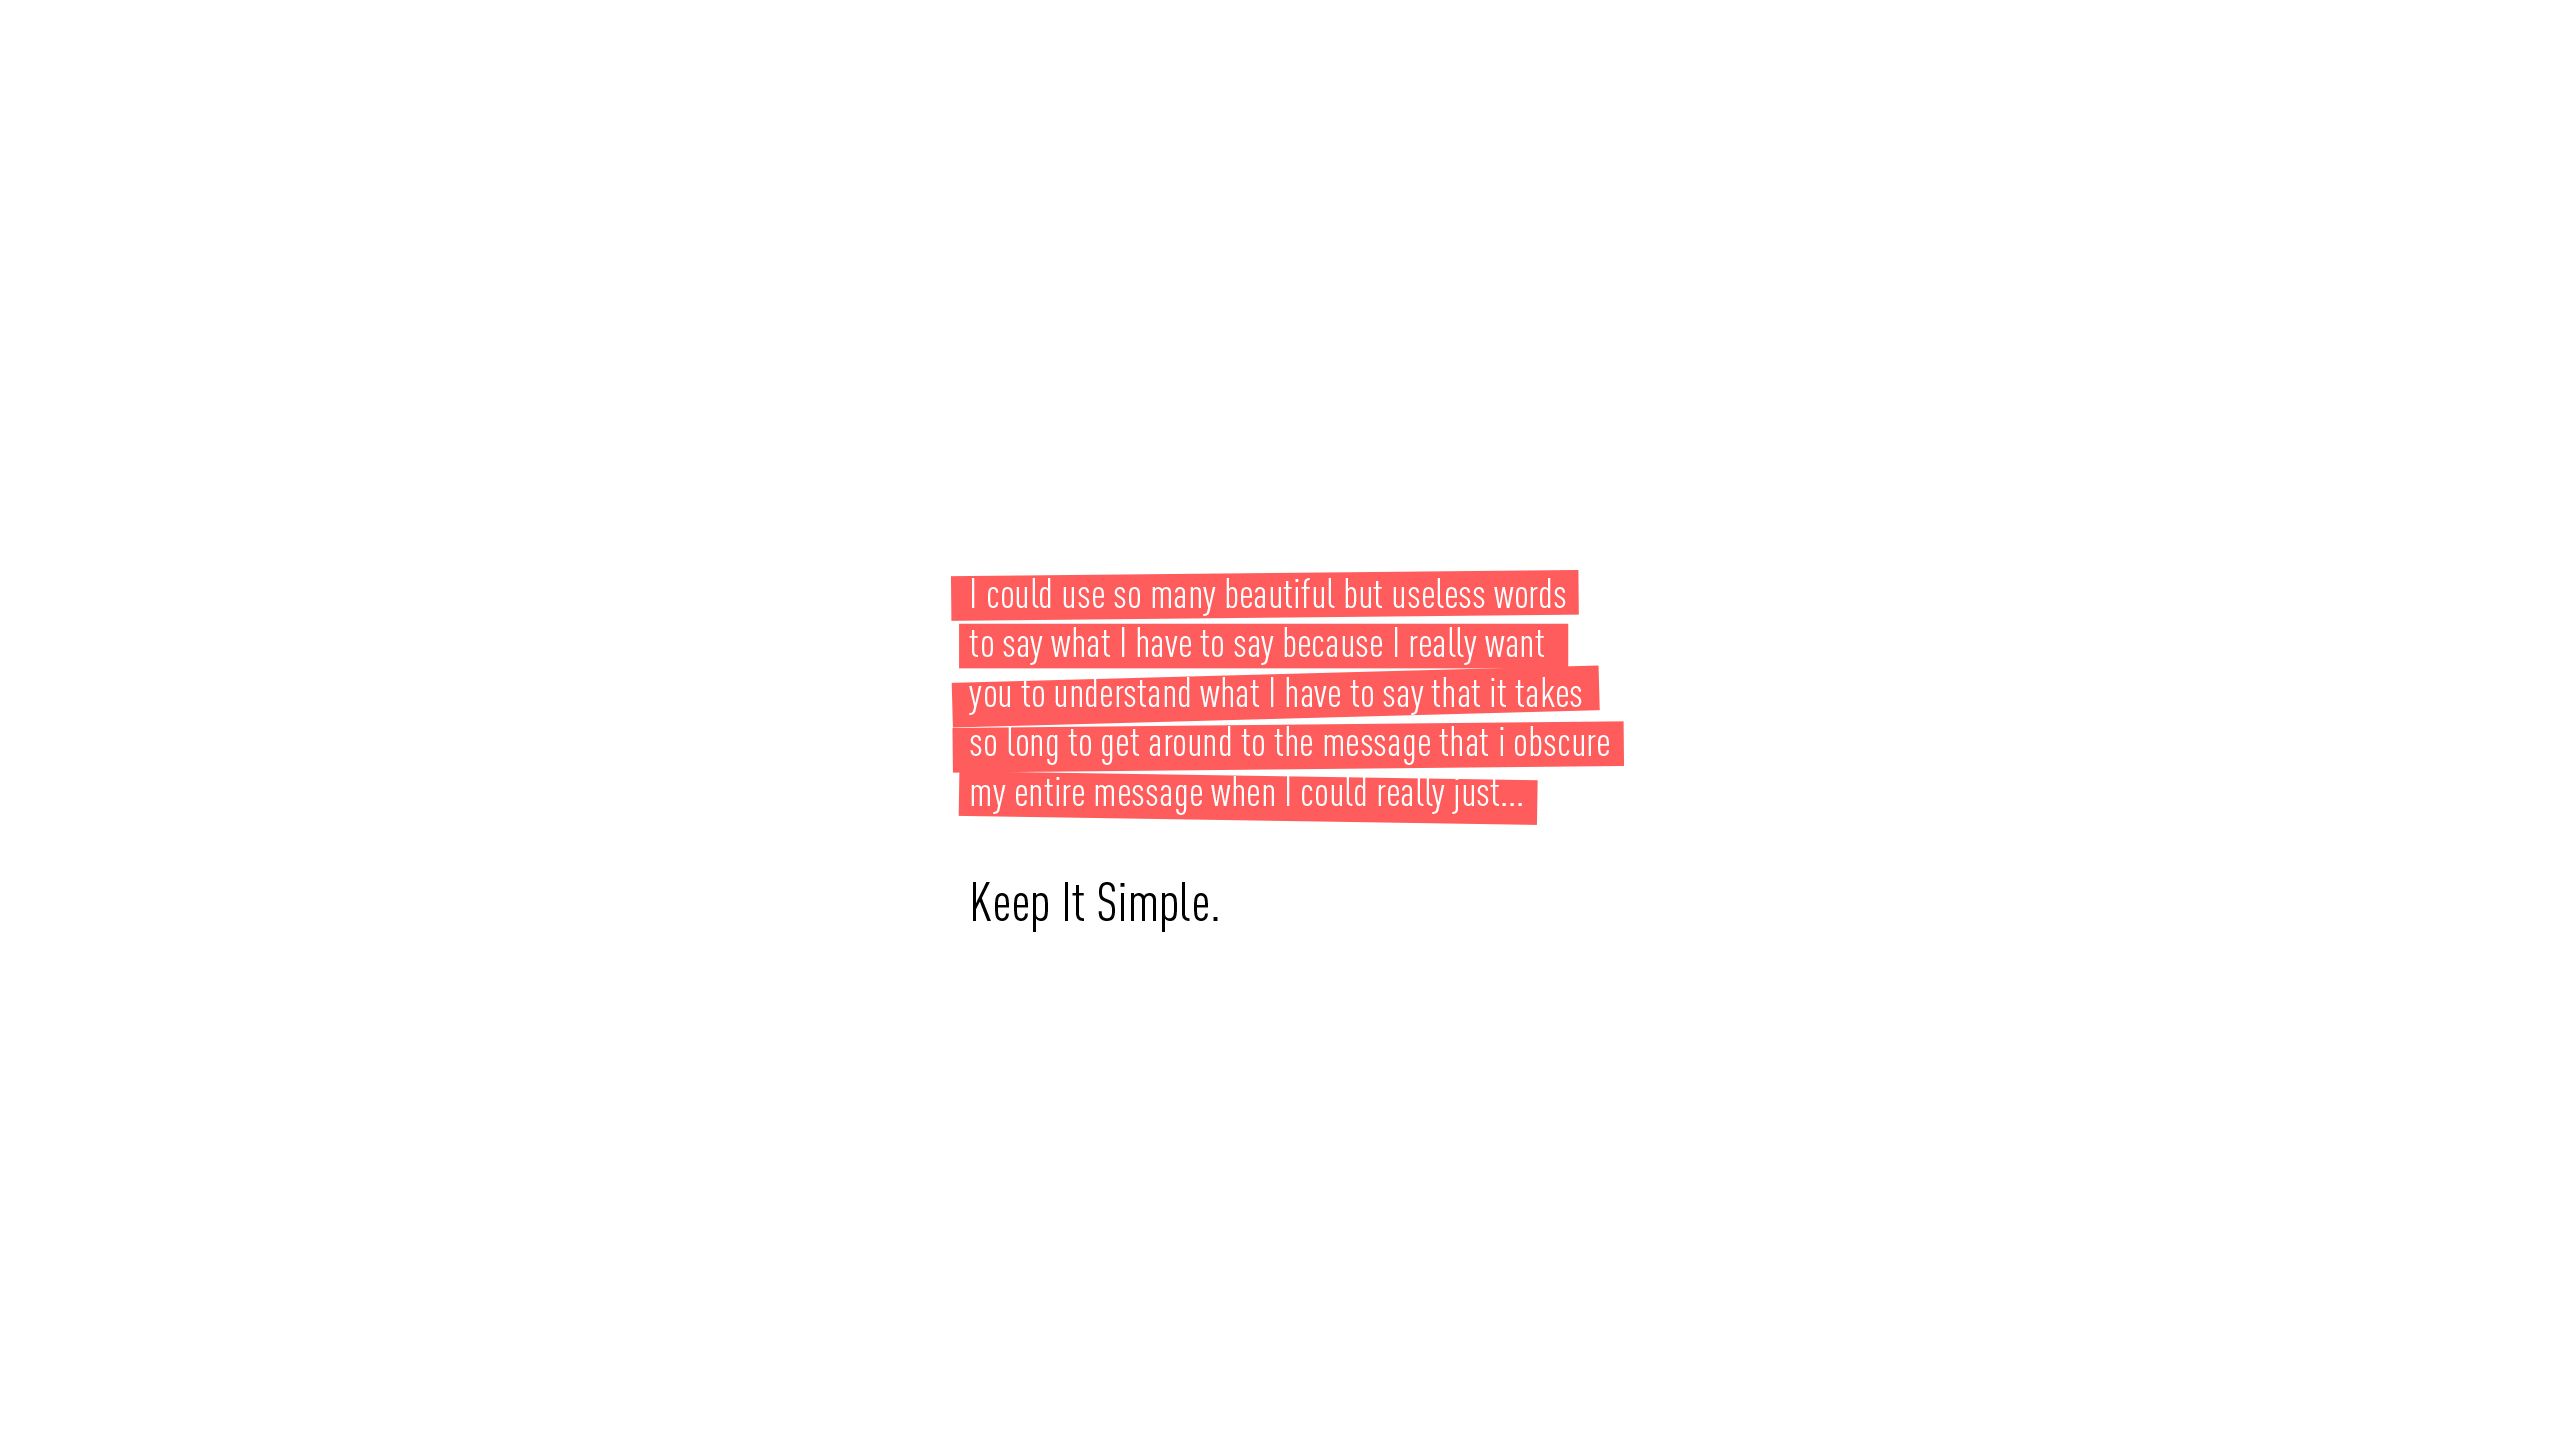 #minimalism, #knockout text, #simple, #humor, #keep it